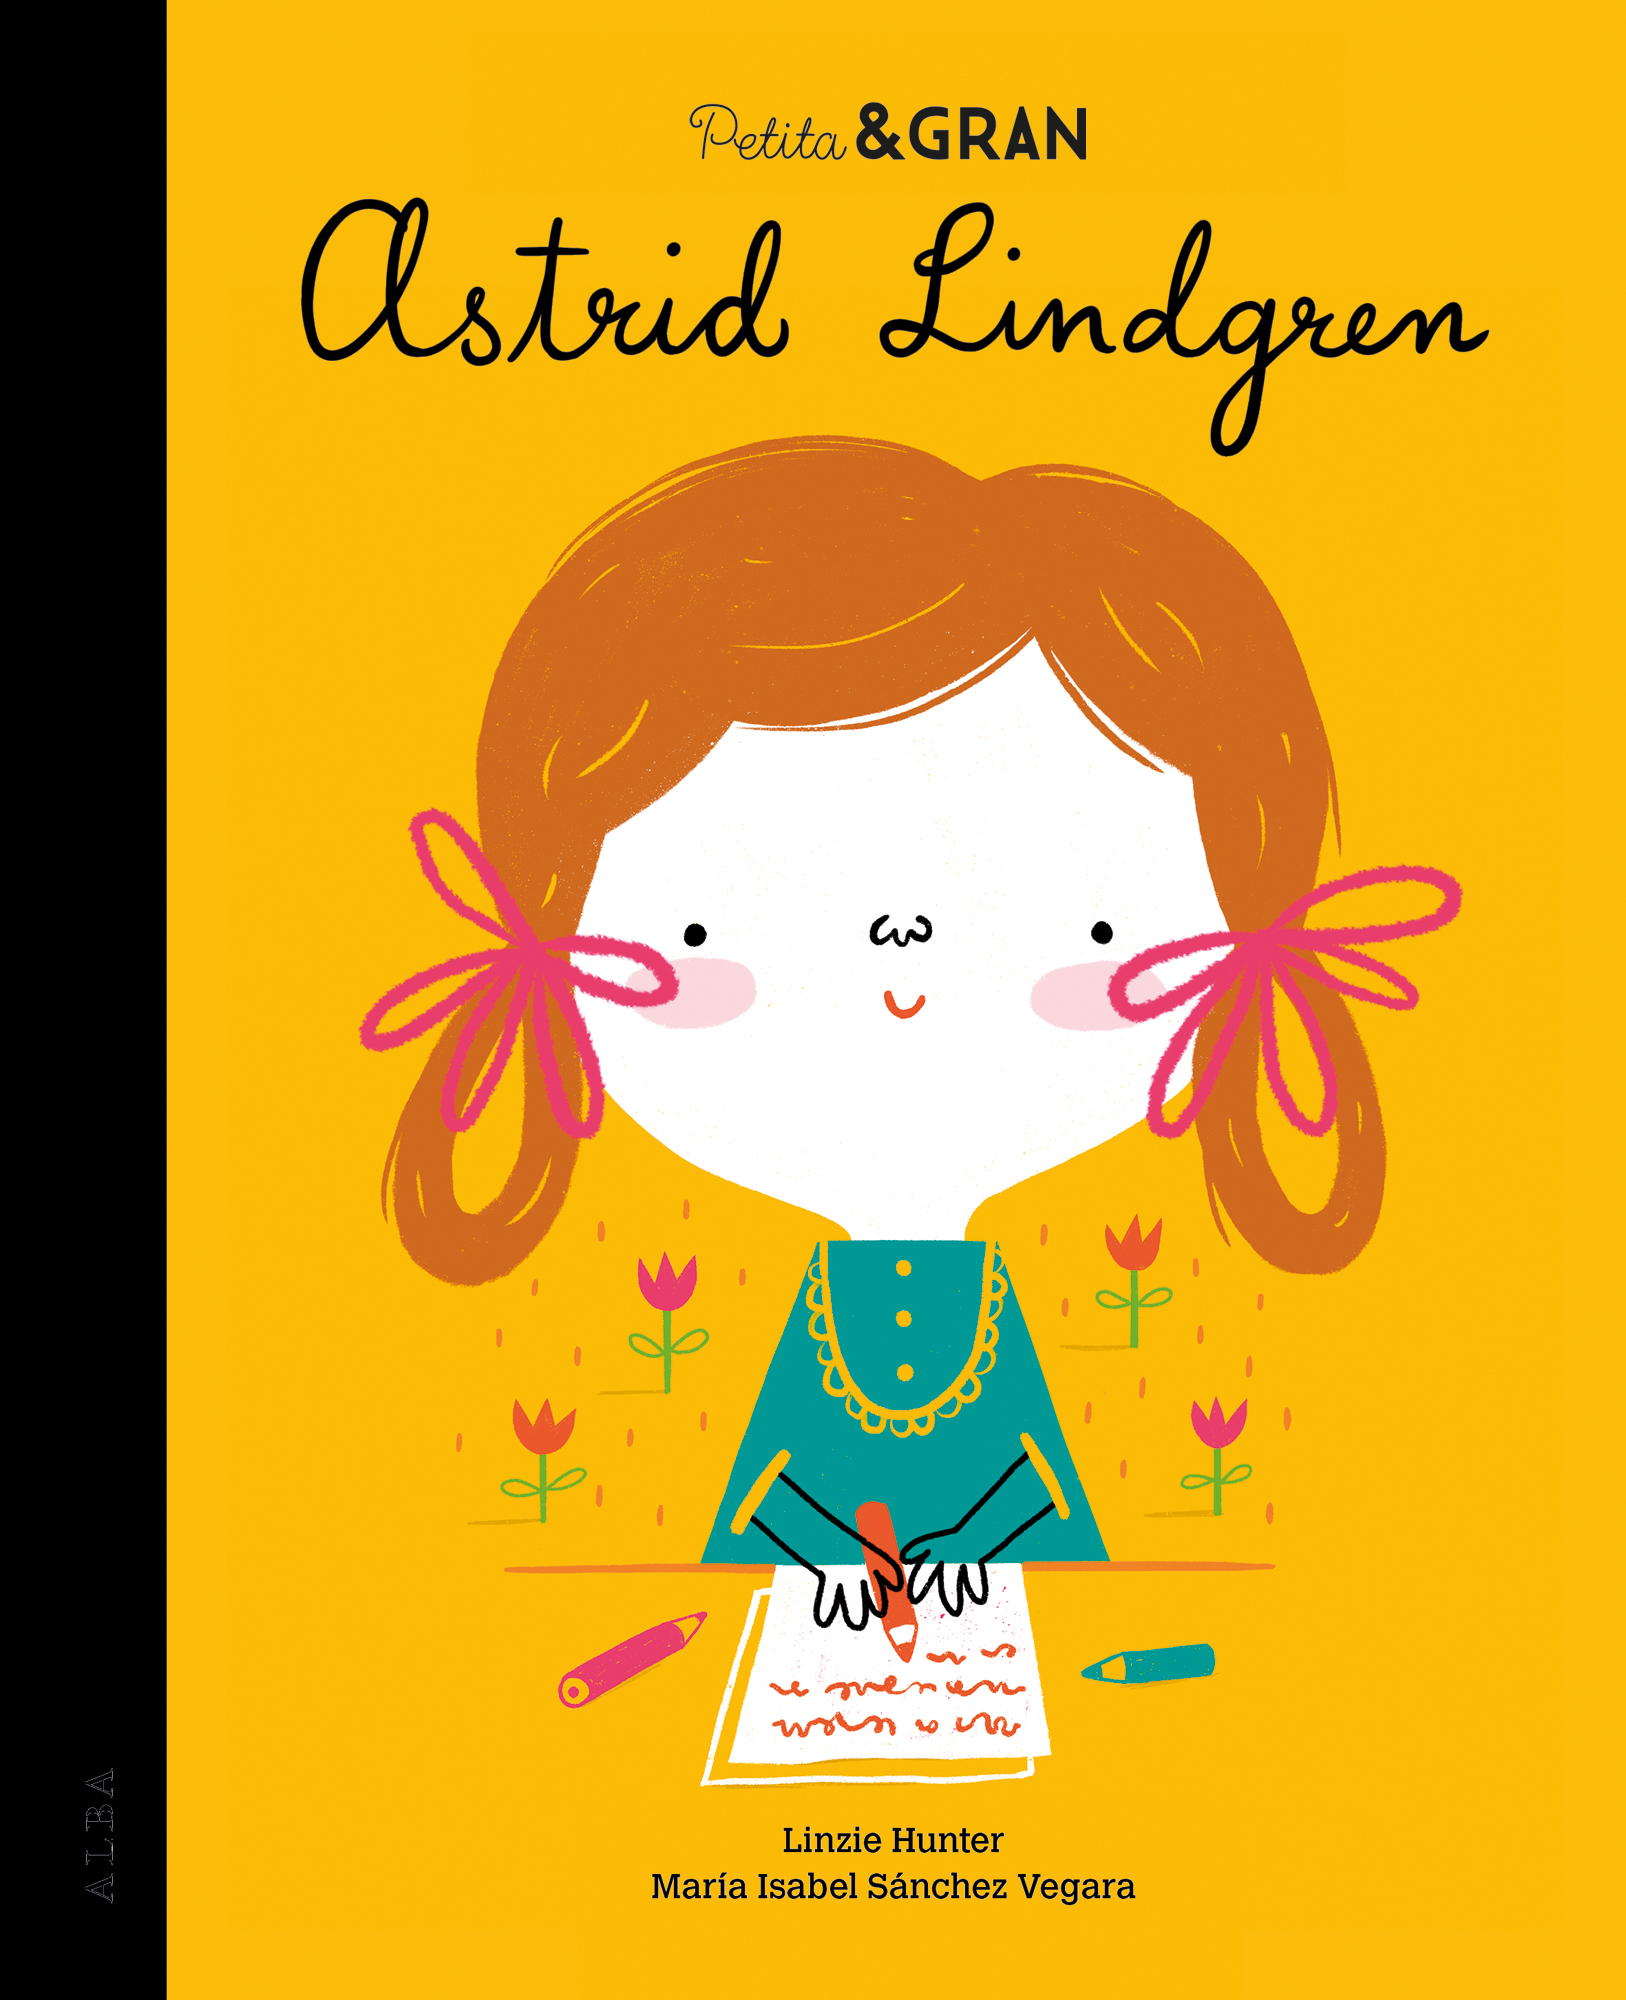 Petita & Gran Astrid Lindgren (9788490656891)